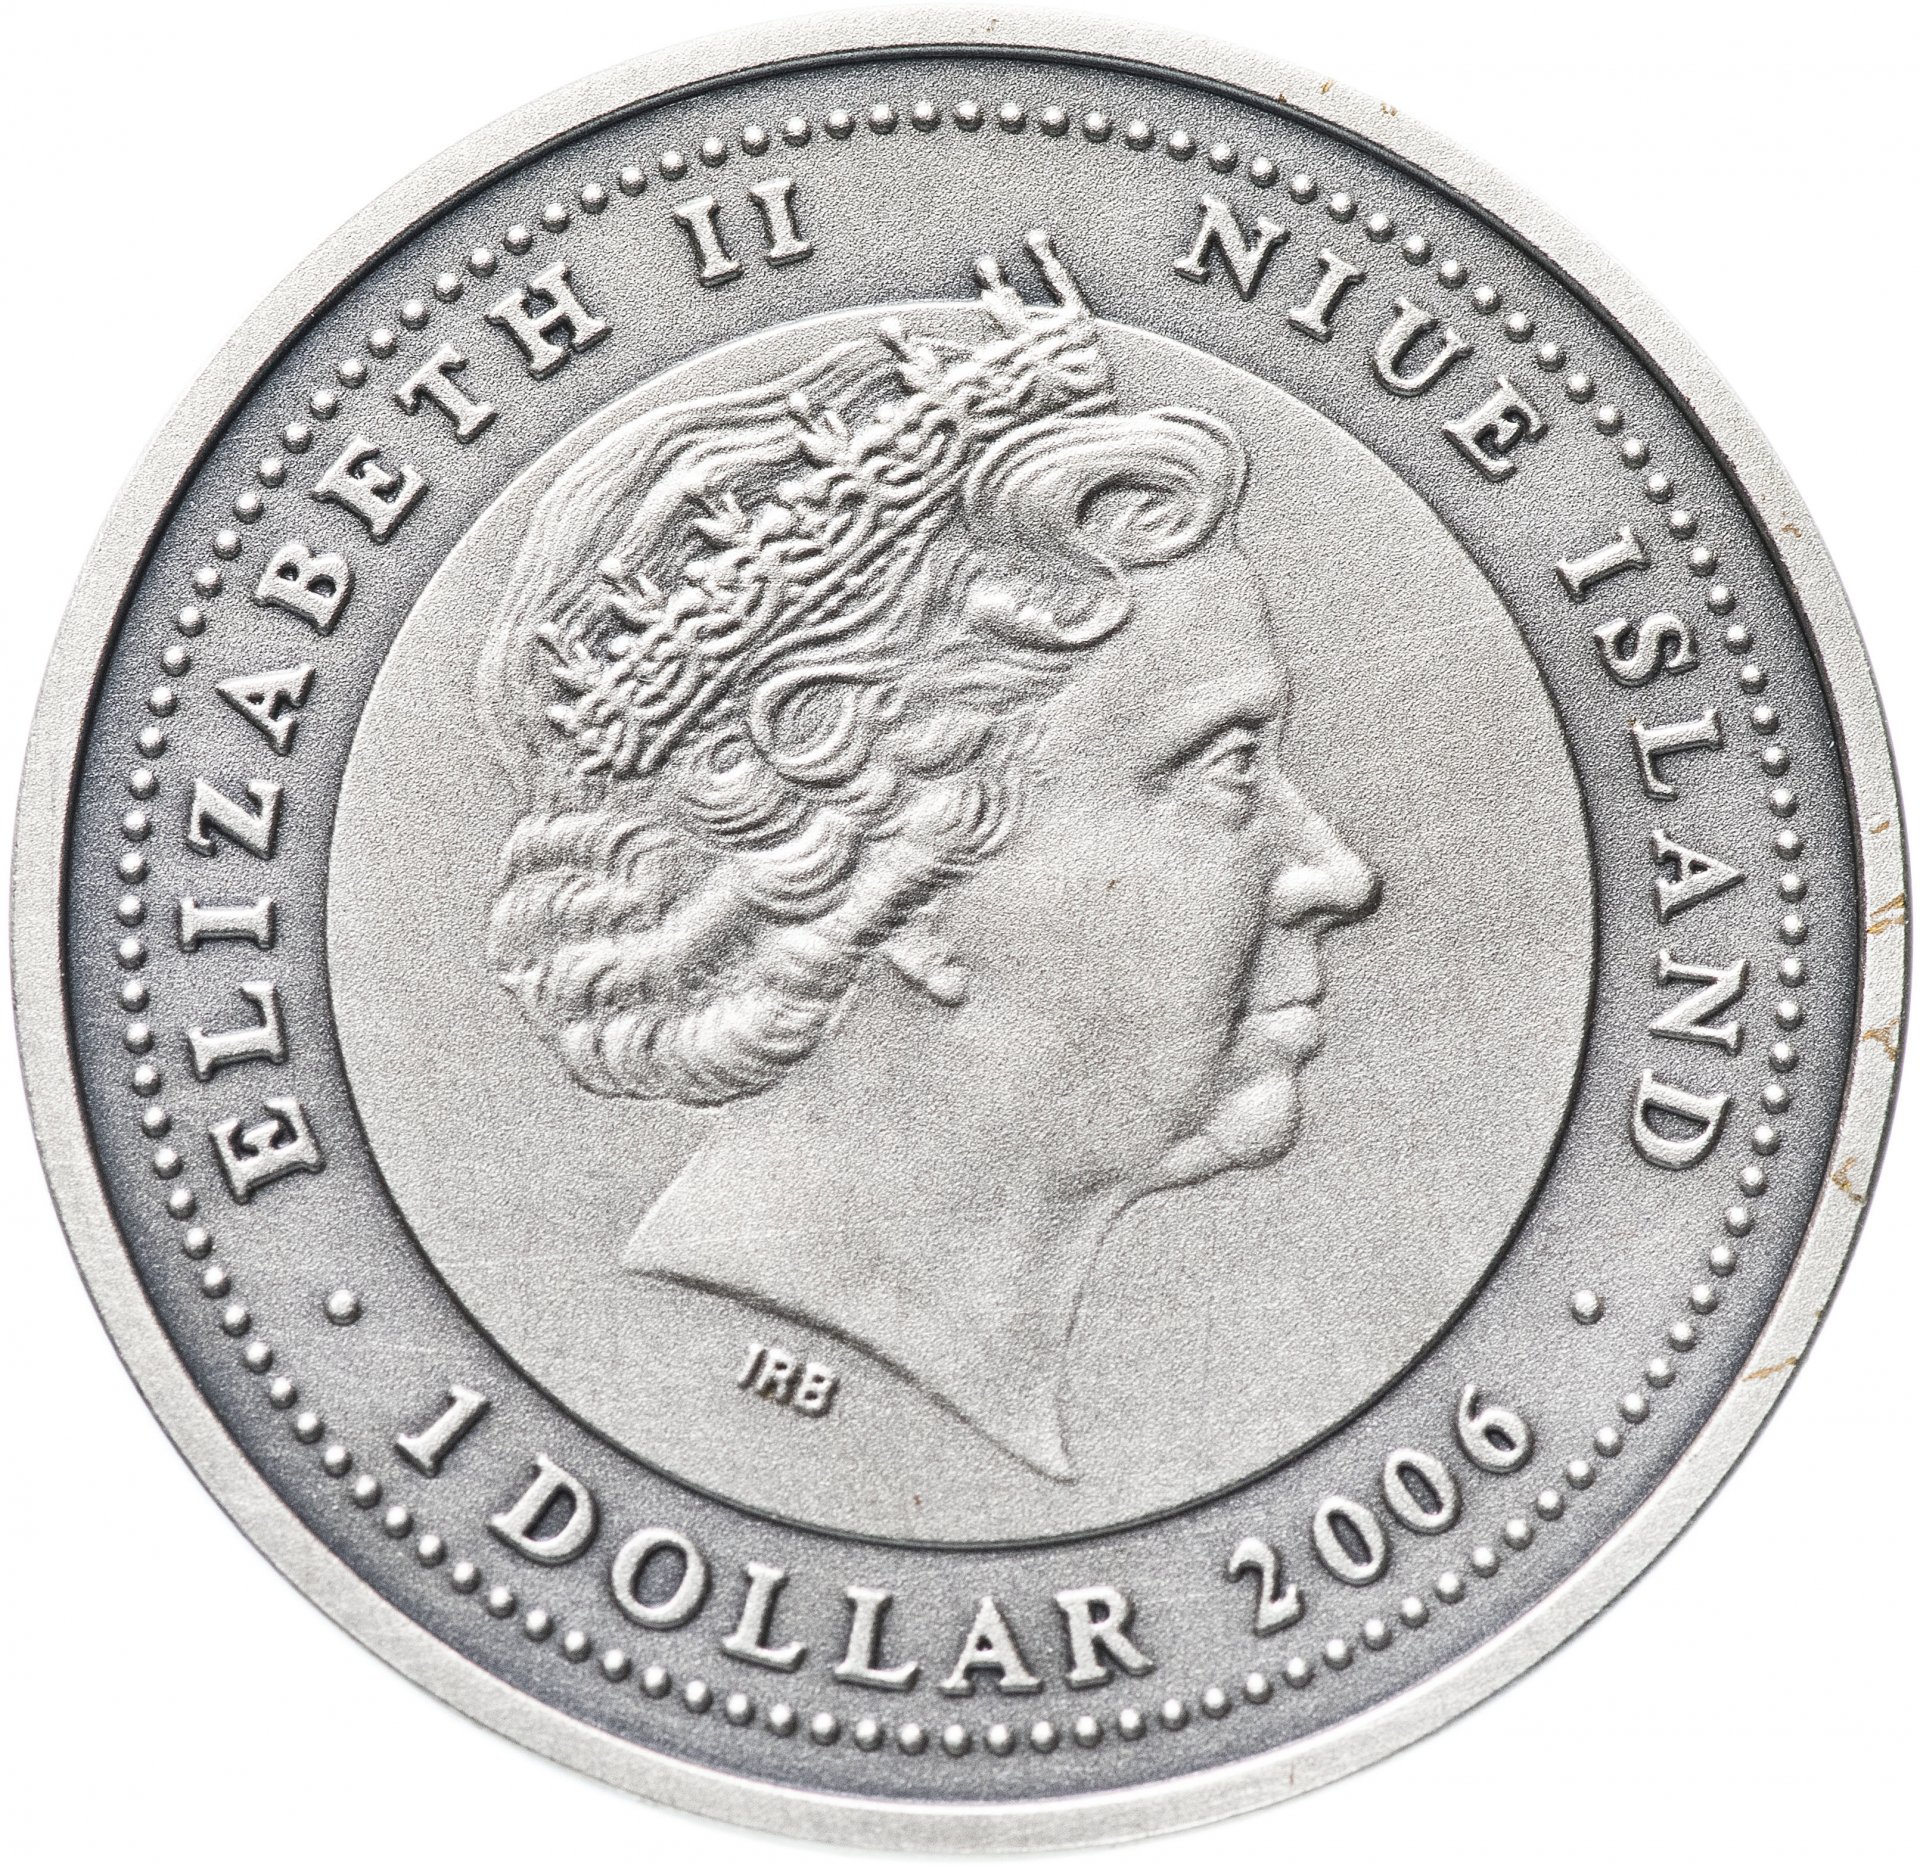 1 доллар 2006